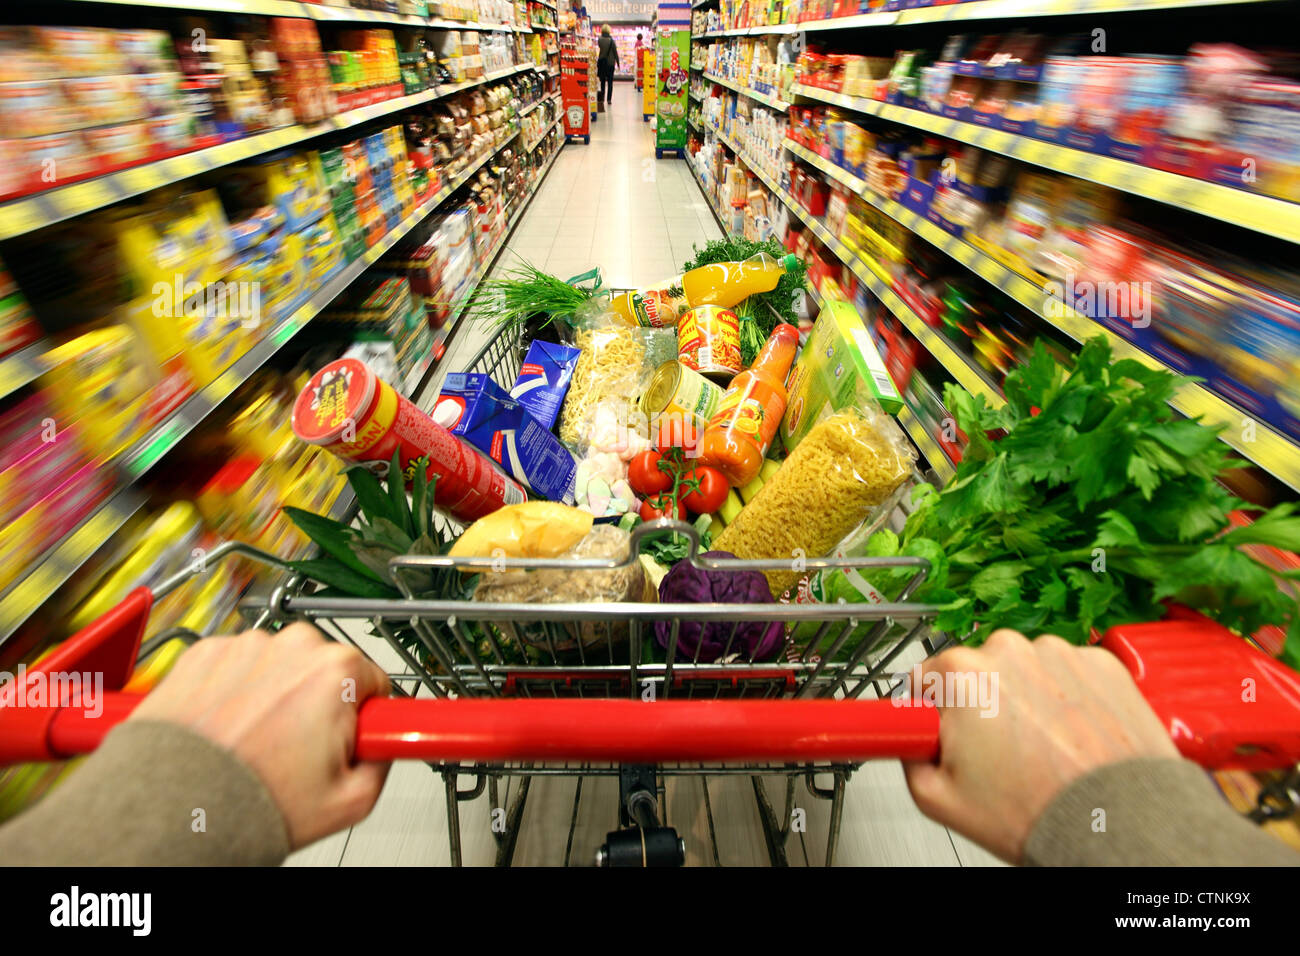 Essen Halle, voller Einkaufswagen wird durch einen Flur mit mehreren Nahrungsmitteln geschoben. Grosser Supermarkt, Self-Service. Stockfoto